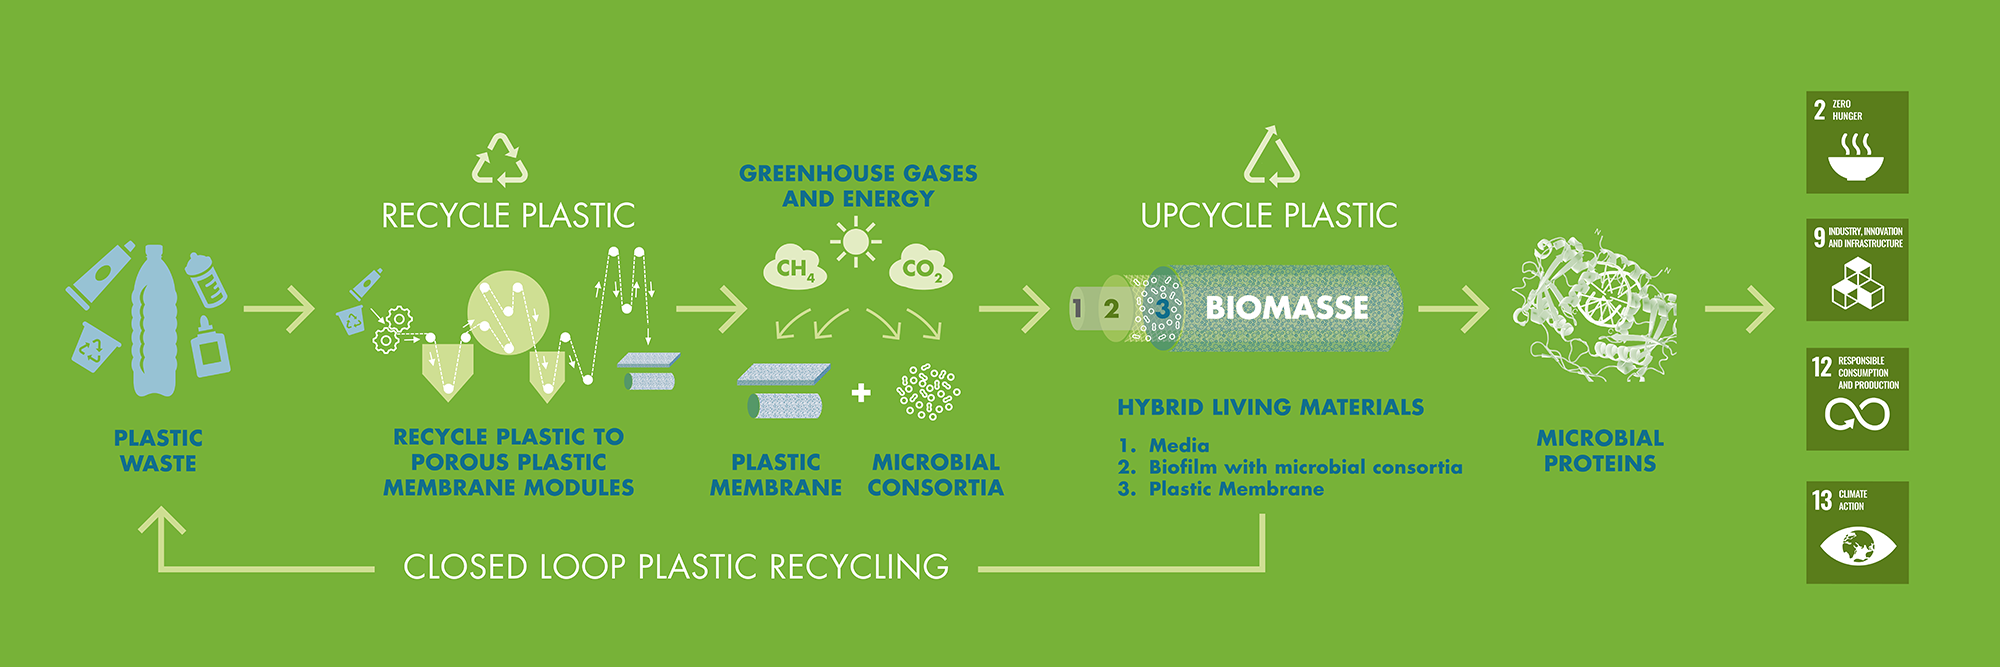 Recycling von Kunststoffen und Entwicklung hybrider lebender Materialien